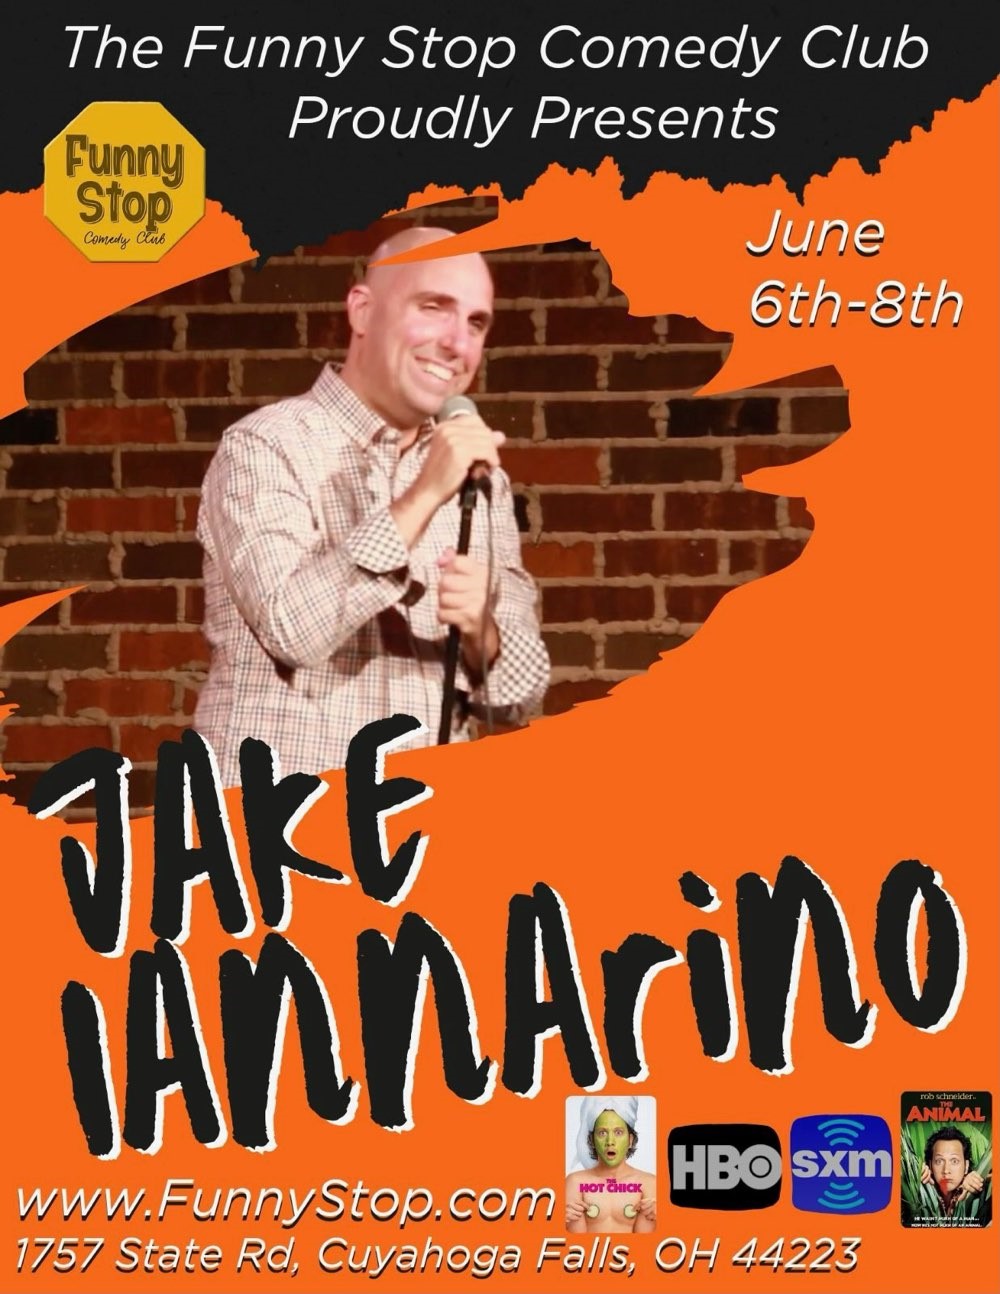 Jake Iannarino - Sat. 7:30PM Show Funny Stop Comedy Club on jun. 08, 19:30@Funny Stop Comedy Club - Compra entradas y obtén información enFunny Stop funnystop.online